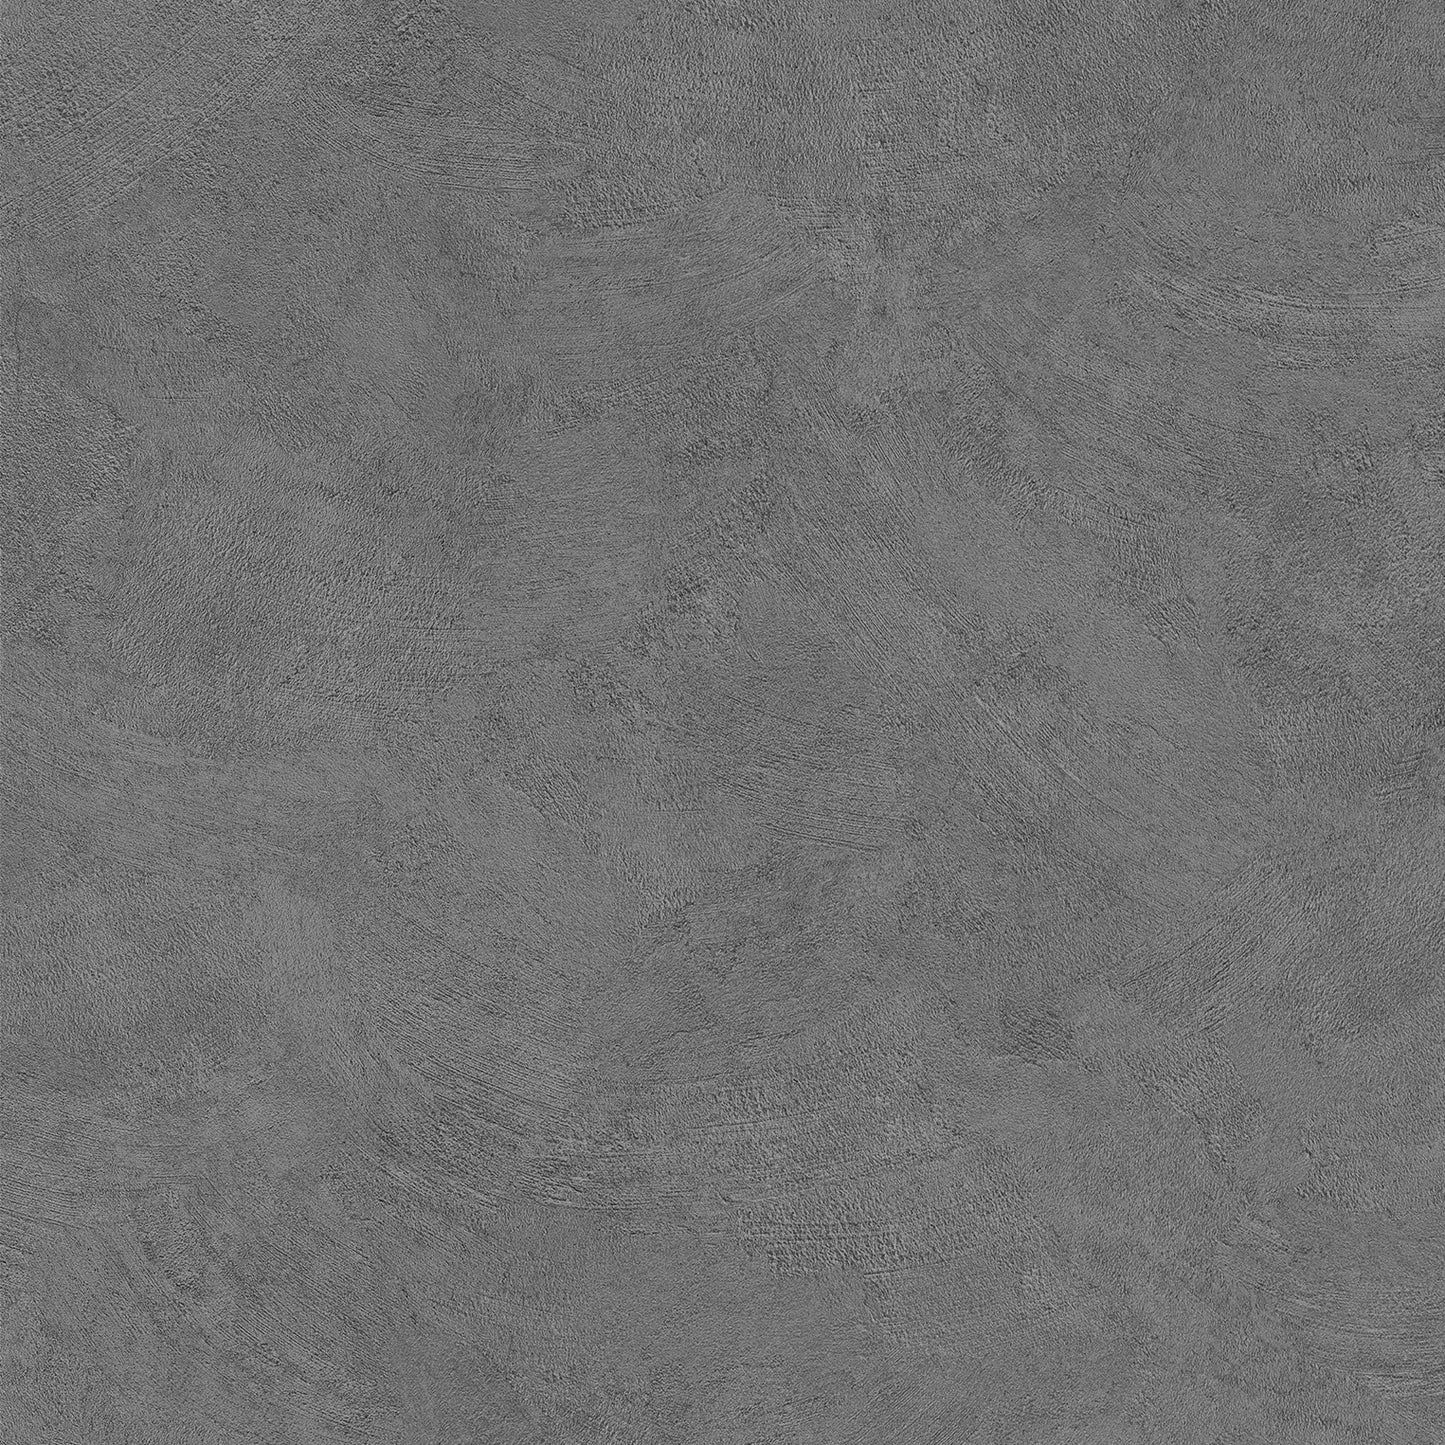 Cover Styl Concrete Range - NE26 - Raw Dark Concrete Plaster